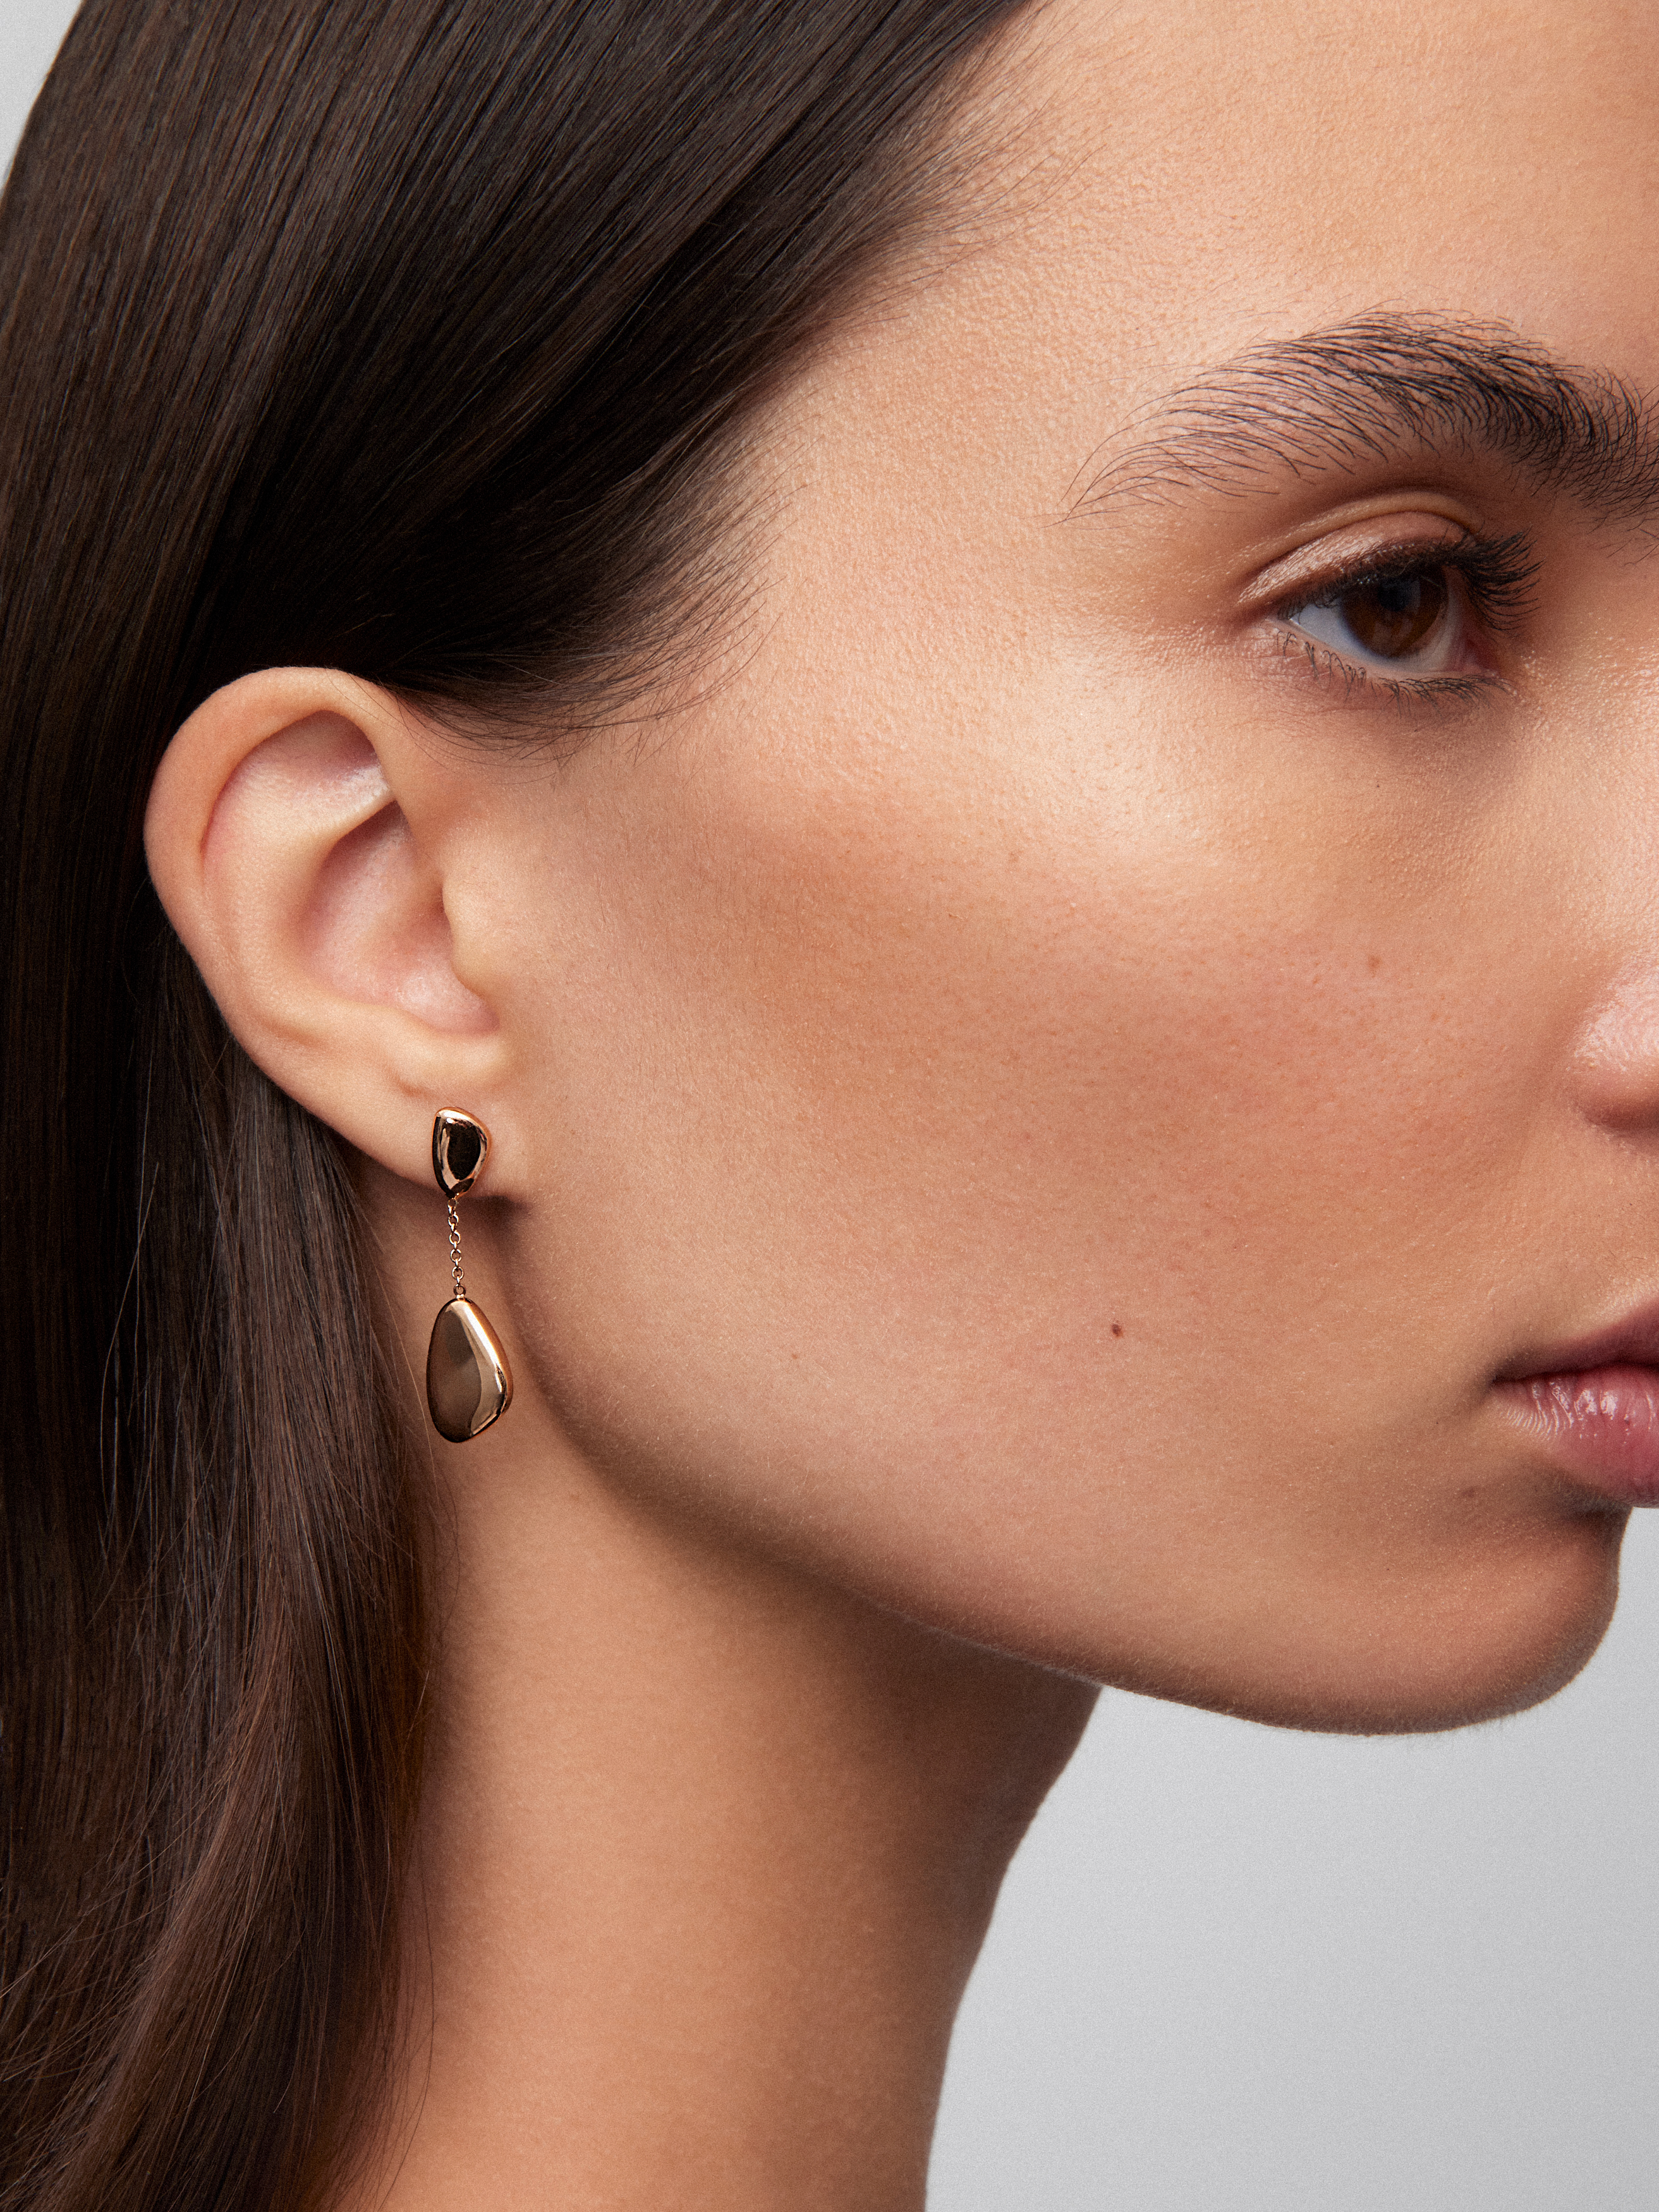 18kt rose gold earrings